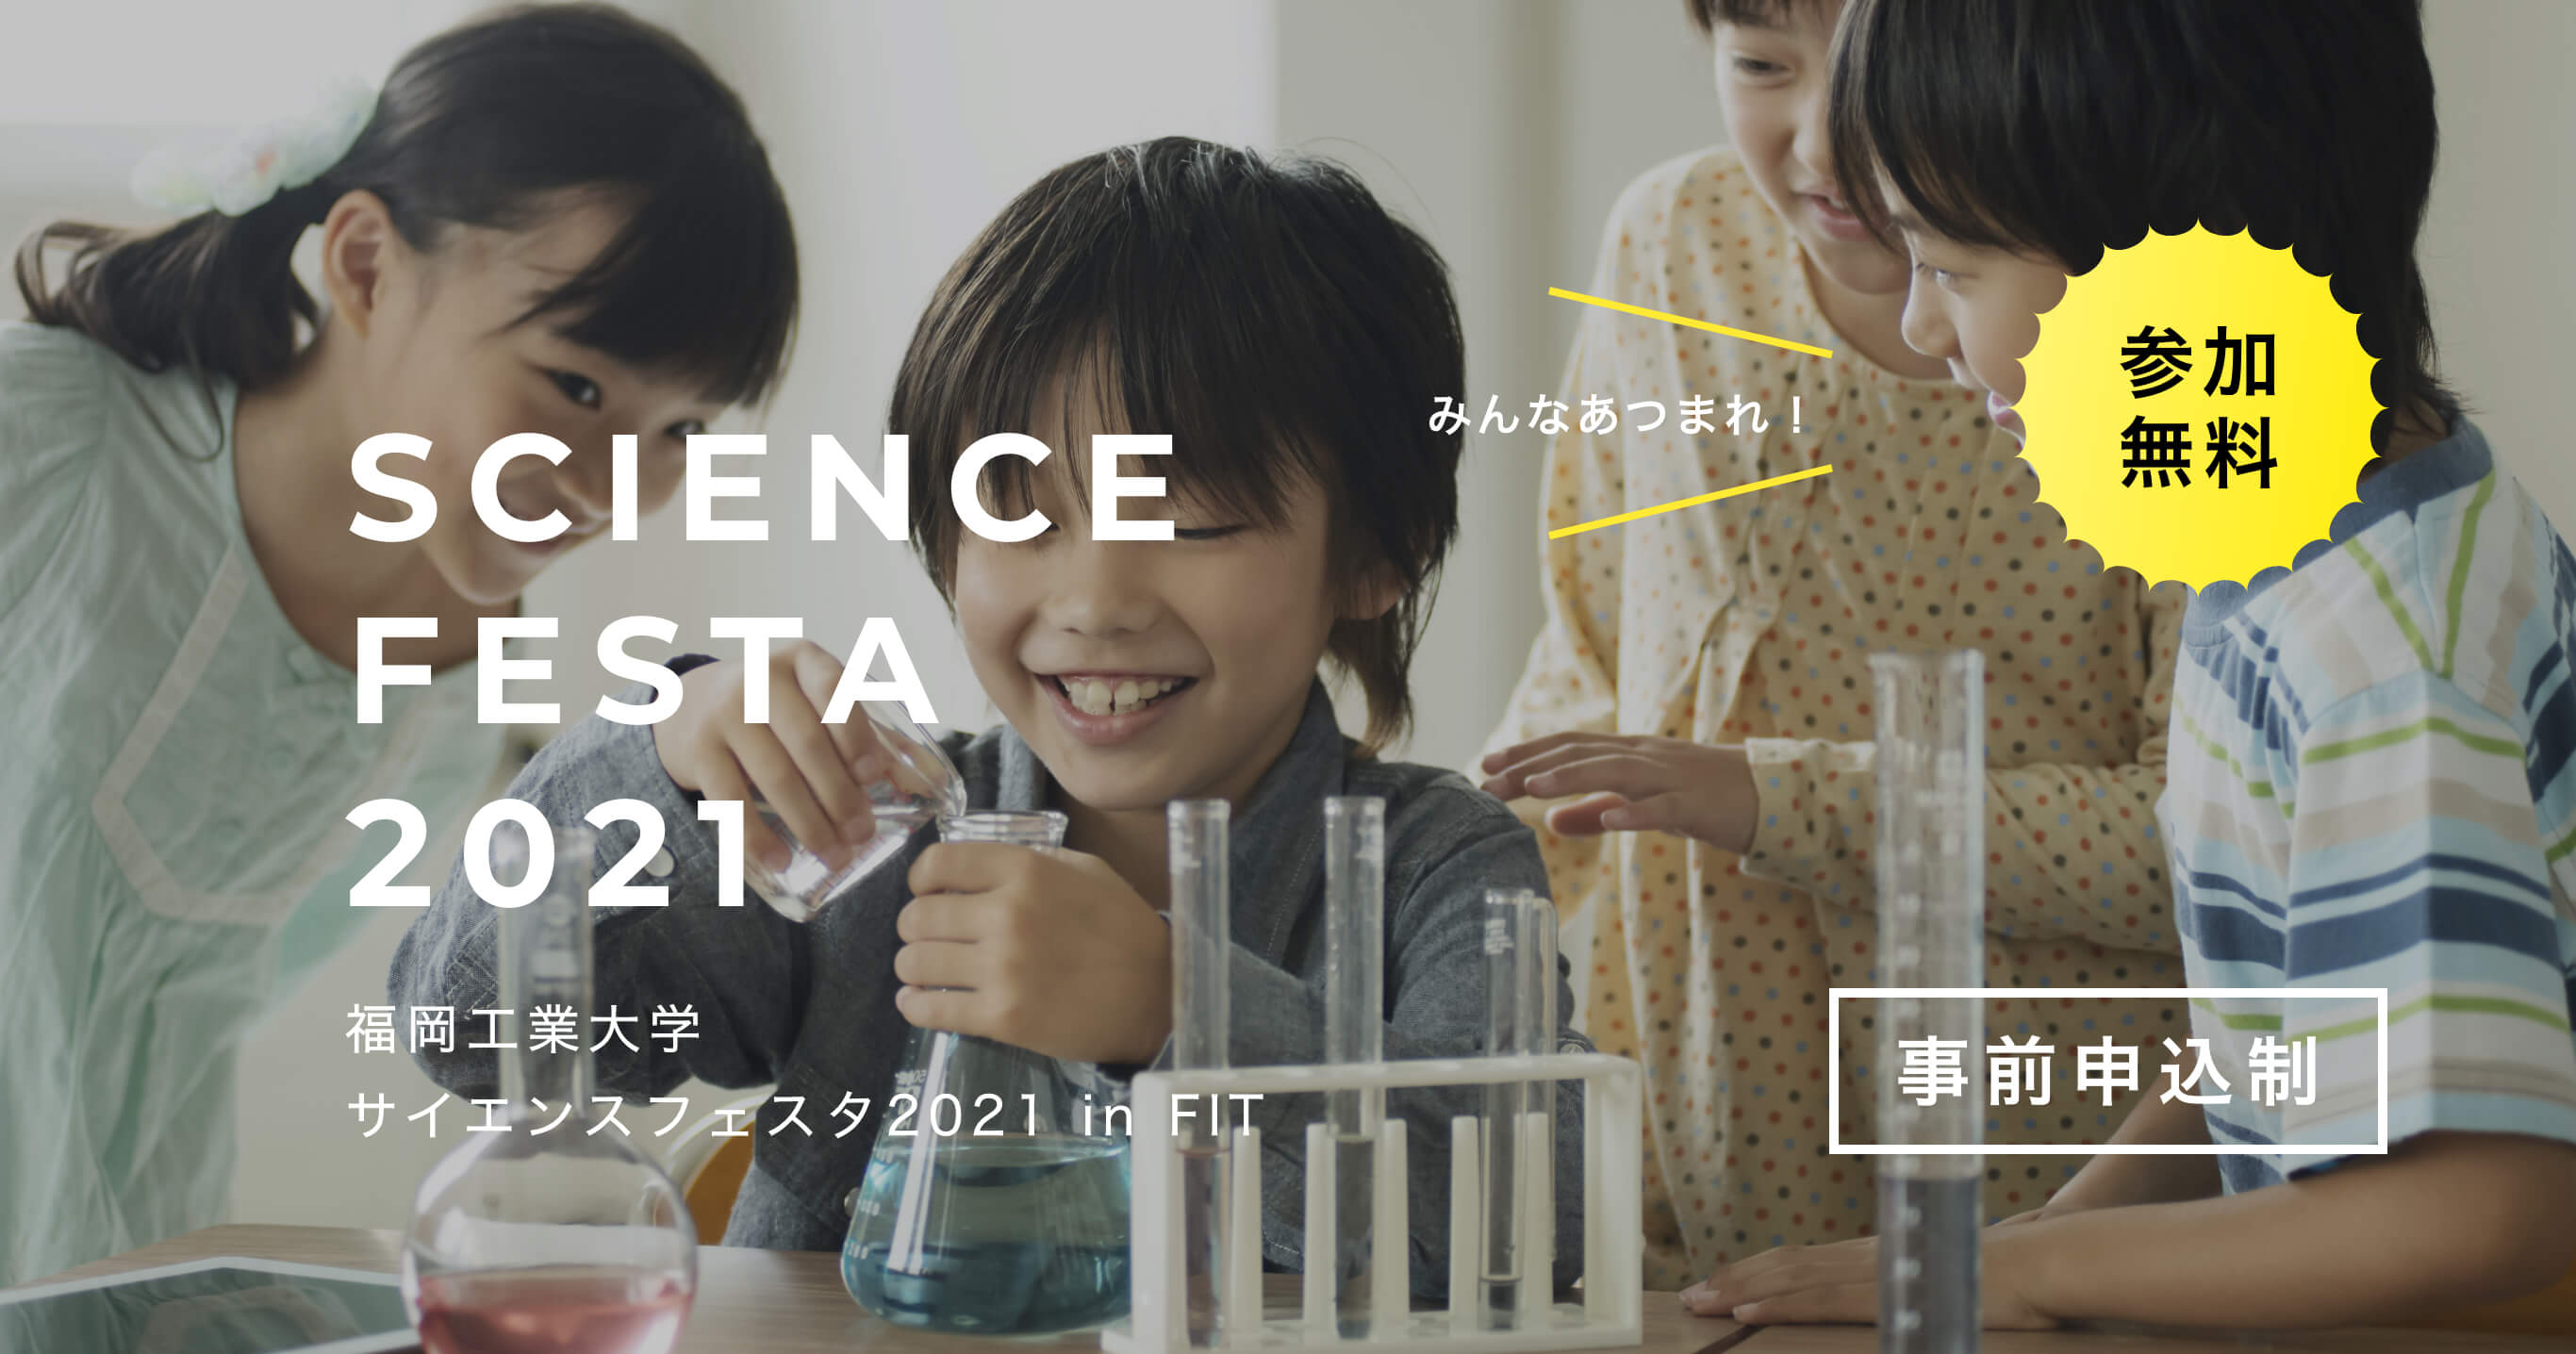 SCIENCE FESTA 2021 福岡工業大学 サイエンスフェスタ2021 in FIT